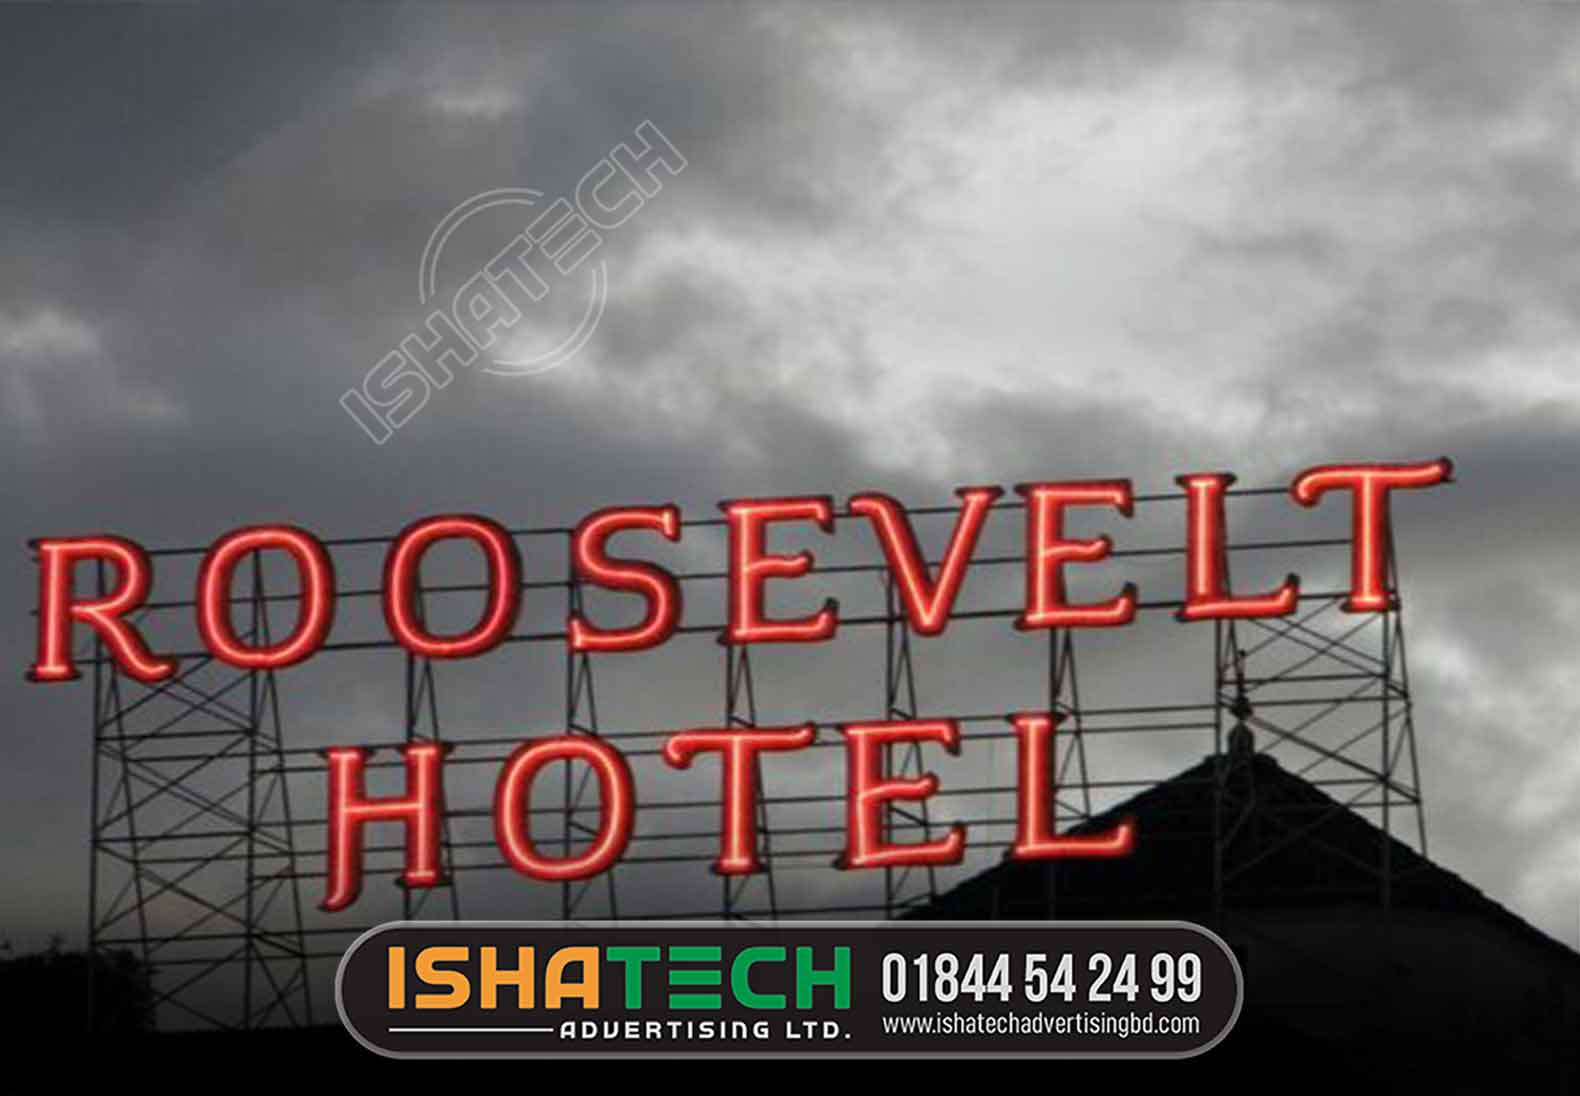 ROOSEVELT HOTEL ROADSIDE NEON LETTER BILLBOARD MAKING AND MANUFACTURER AGENCY IN DHAKA, BANGLADESH